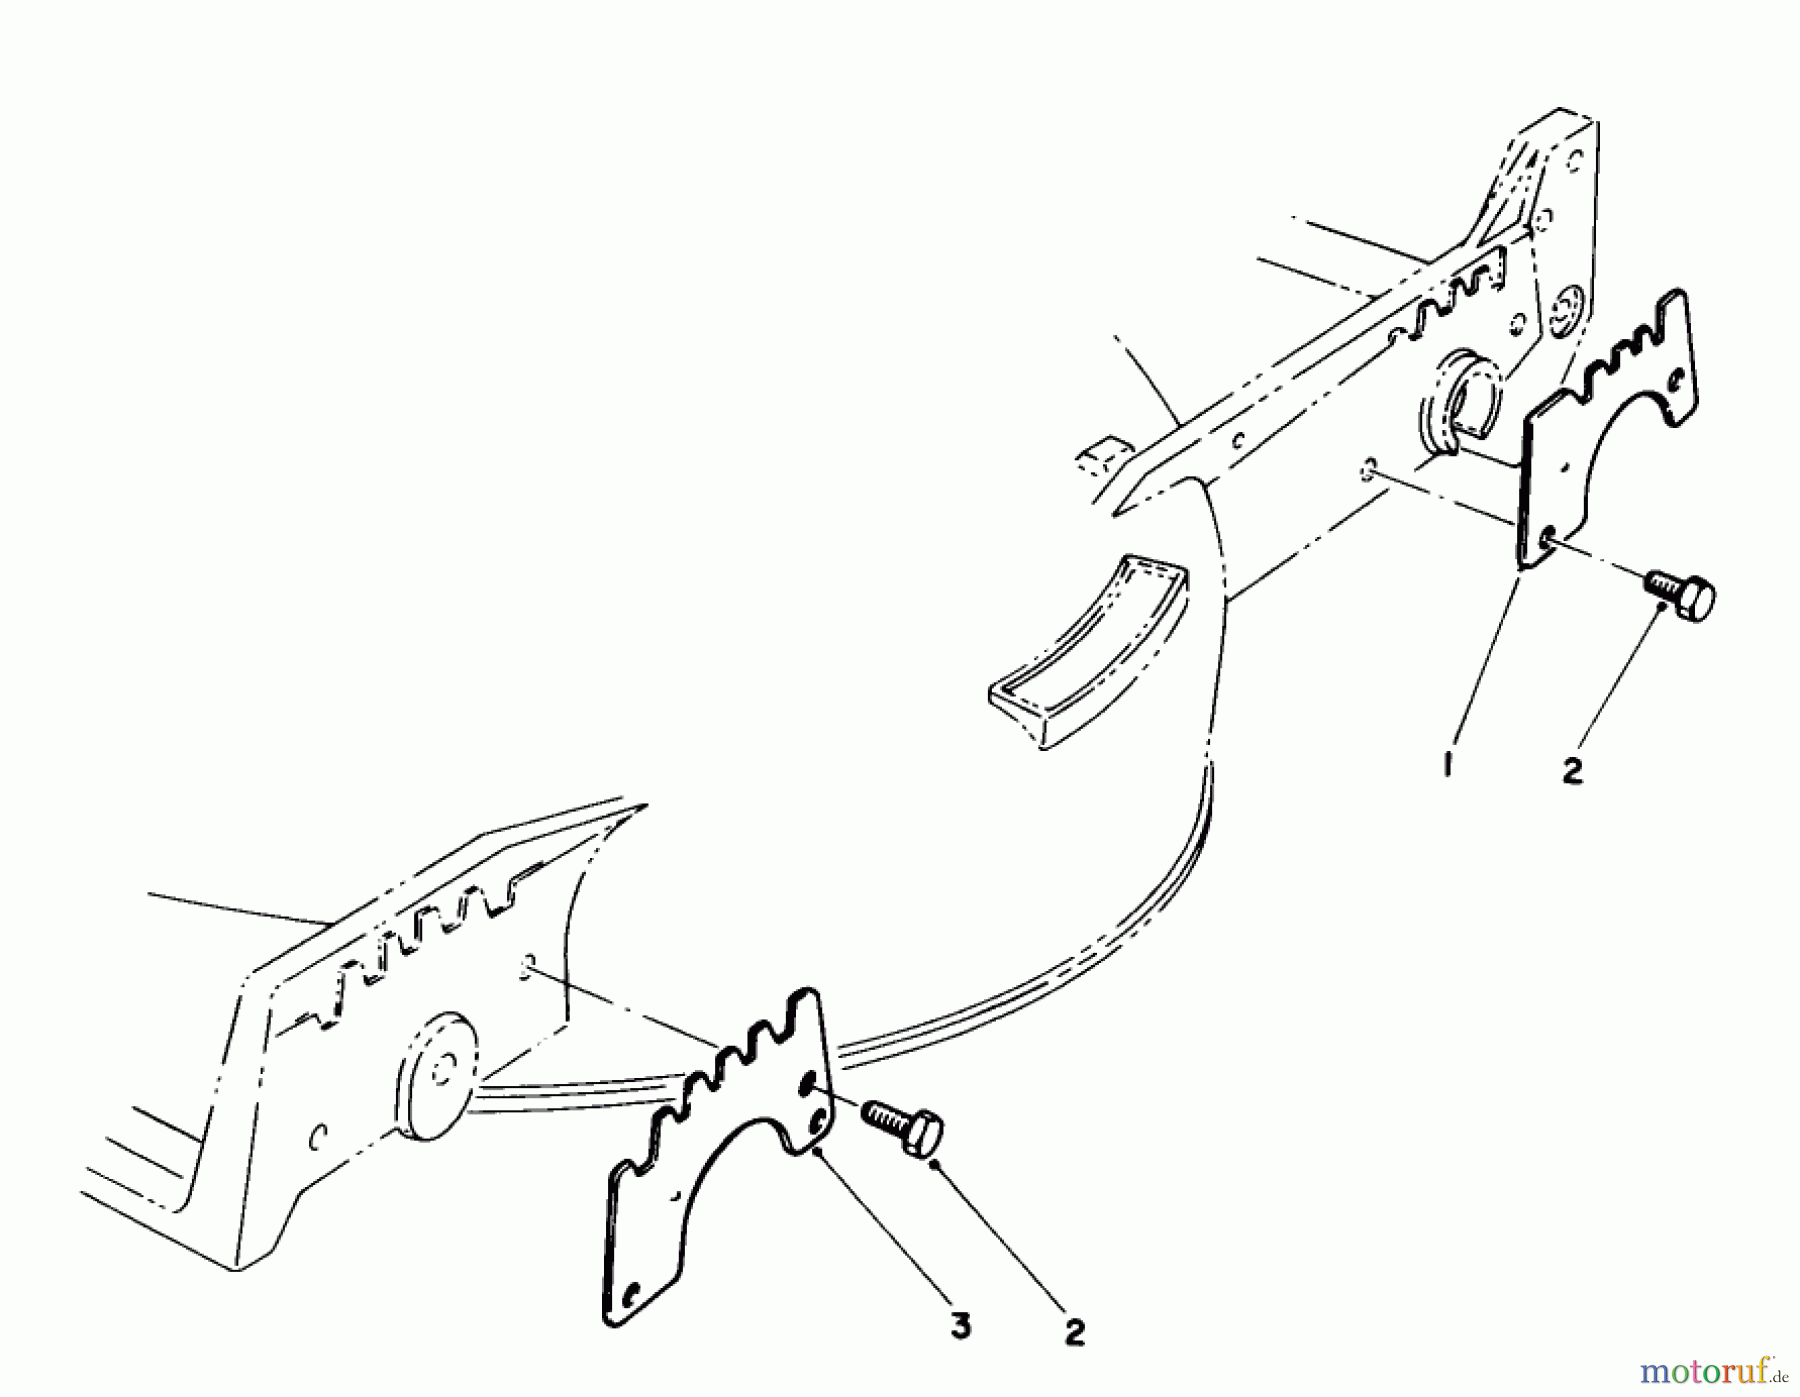  Toro Neu Mowers, Walk-Behind Seite 1 20210 - Toro Lawnmower, 1991 (1000001-1999999) WEAR PLATE MODEL NO. 49-4080 (OPTIONAL)